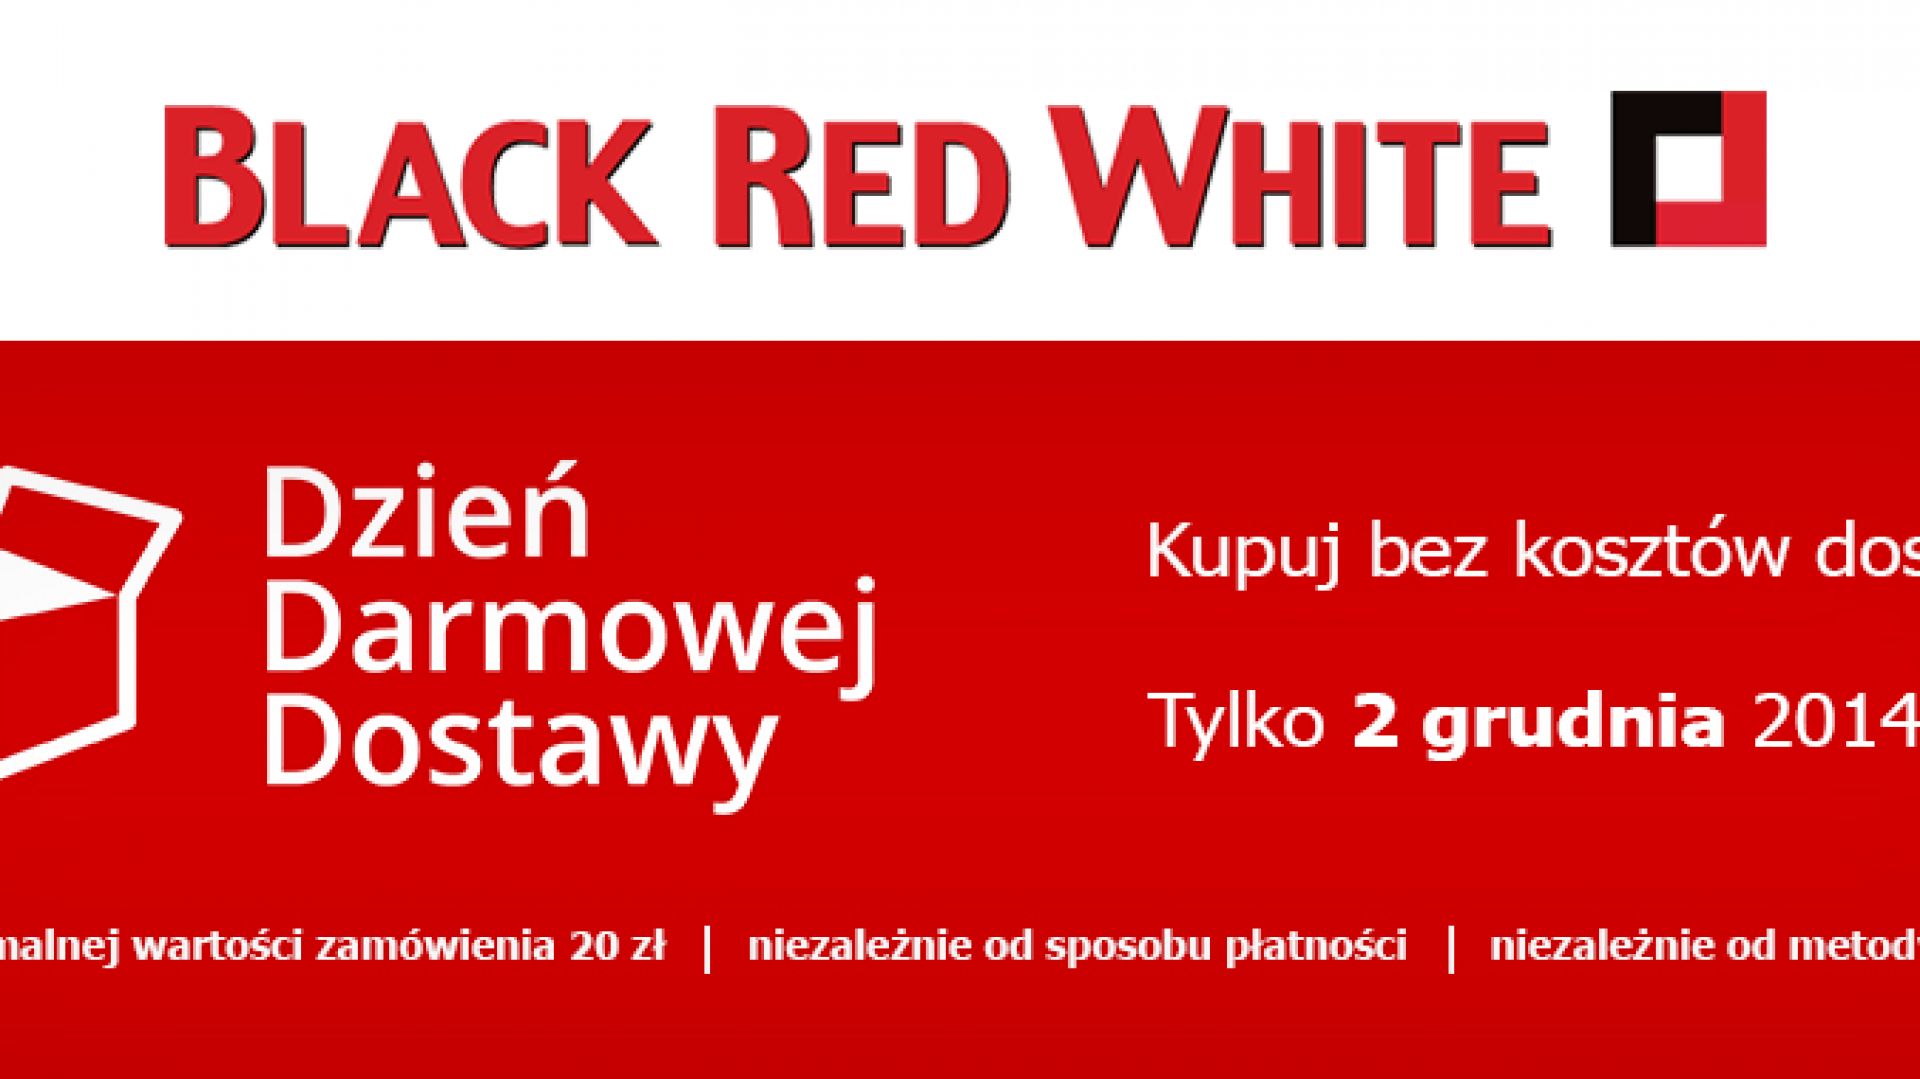 Dzień Darmowej Dostawy w Black Red White